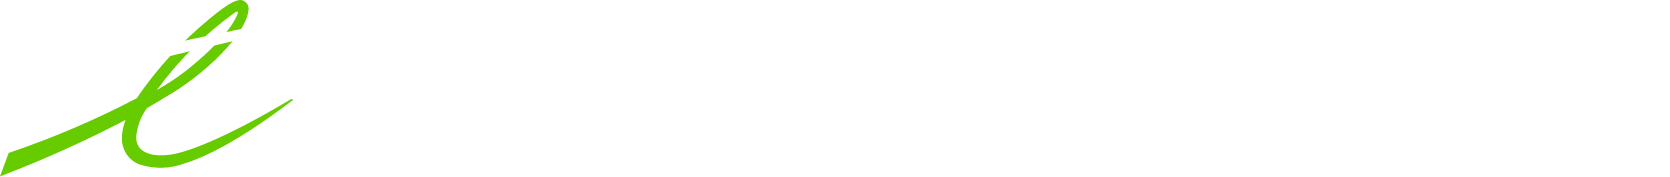 Telus International logo large for dark backgrounds (transparent PNG)